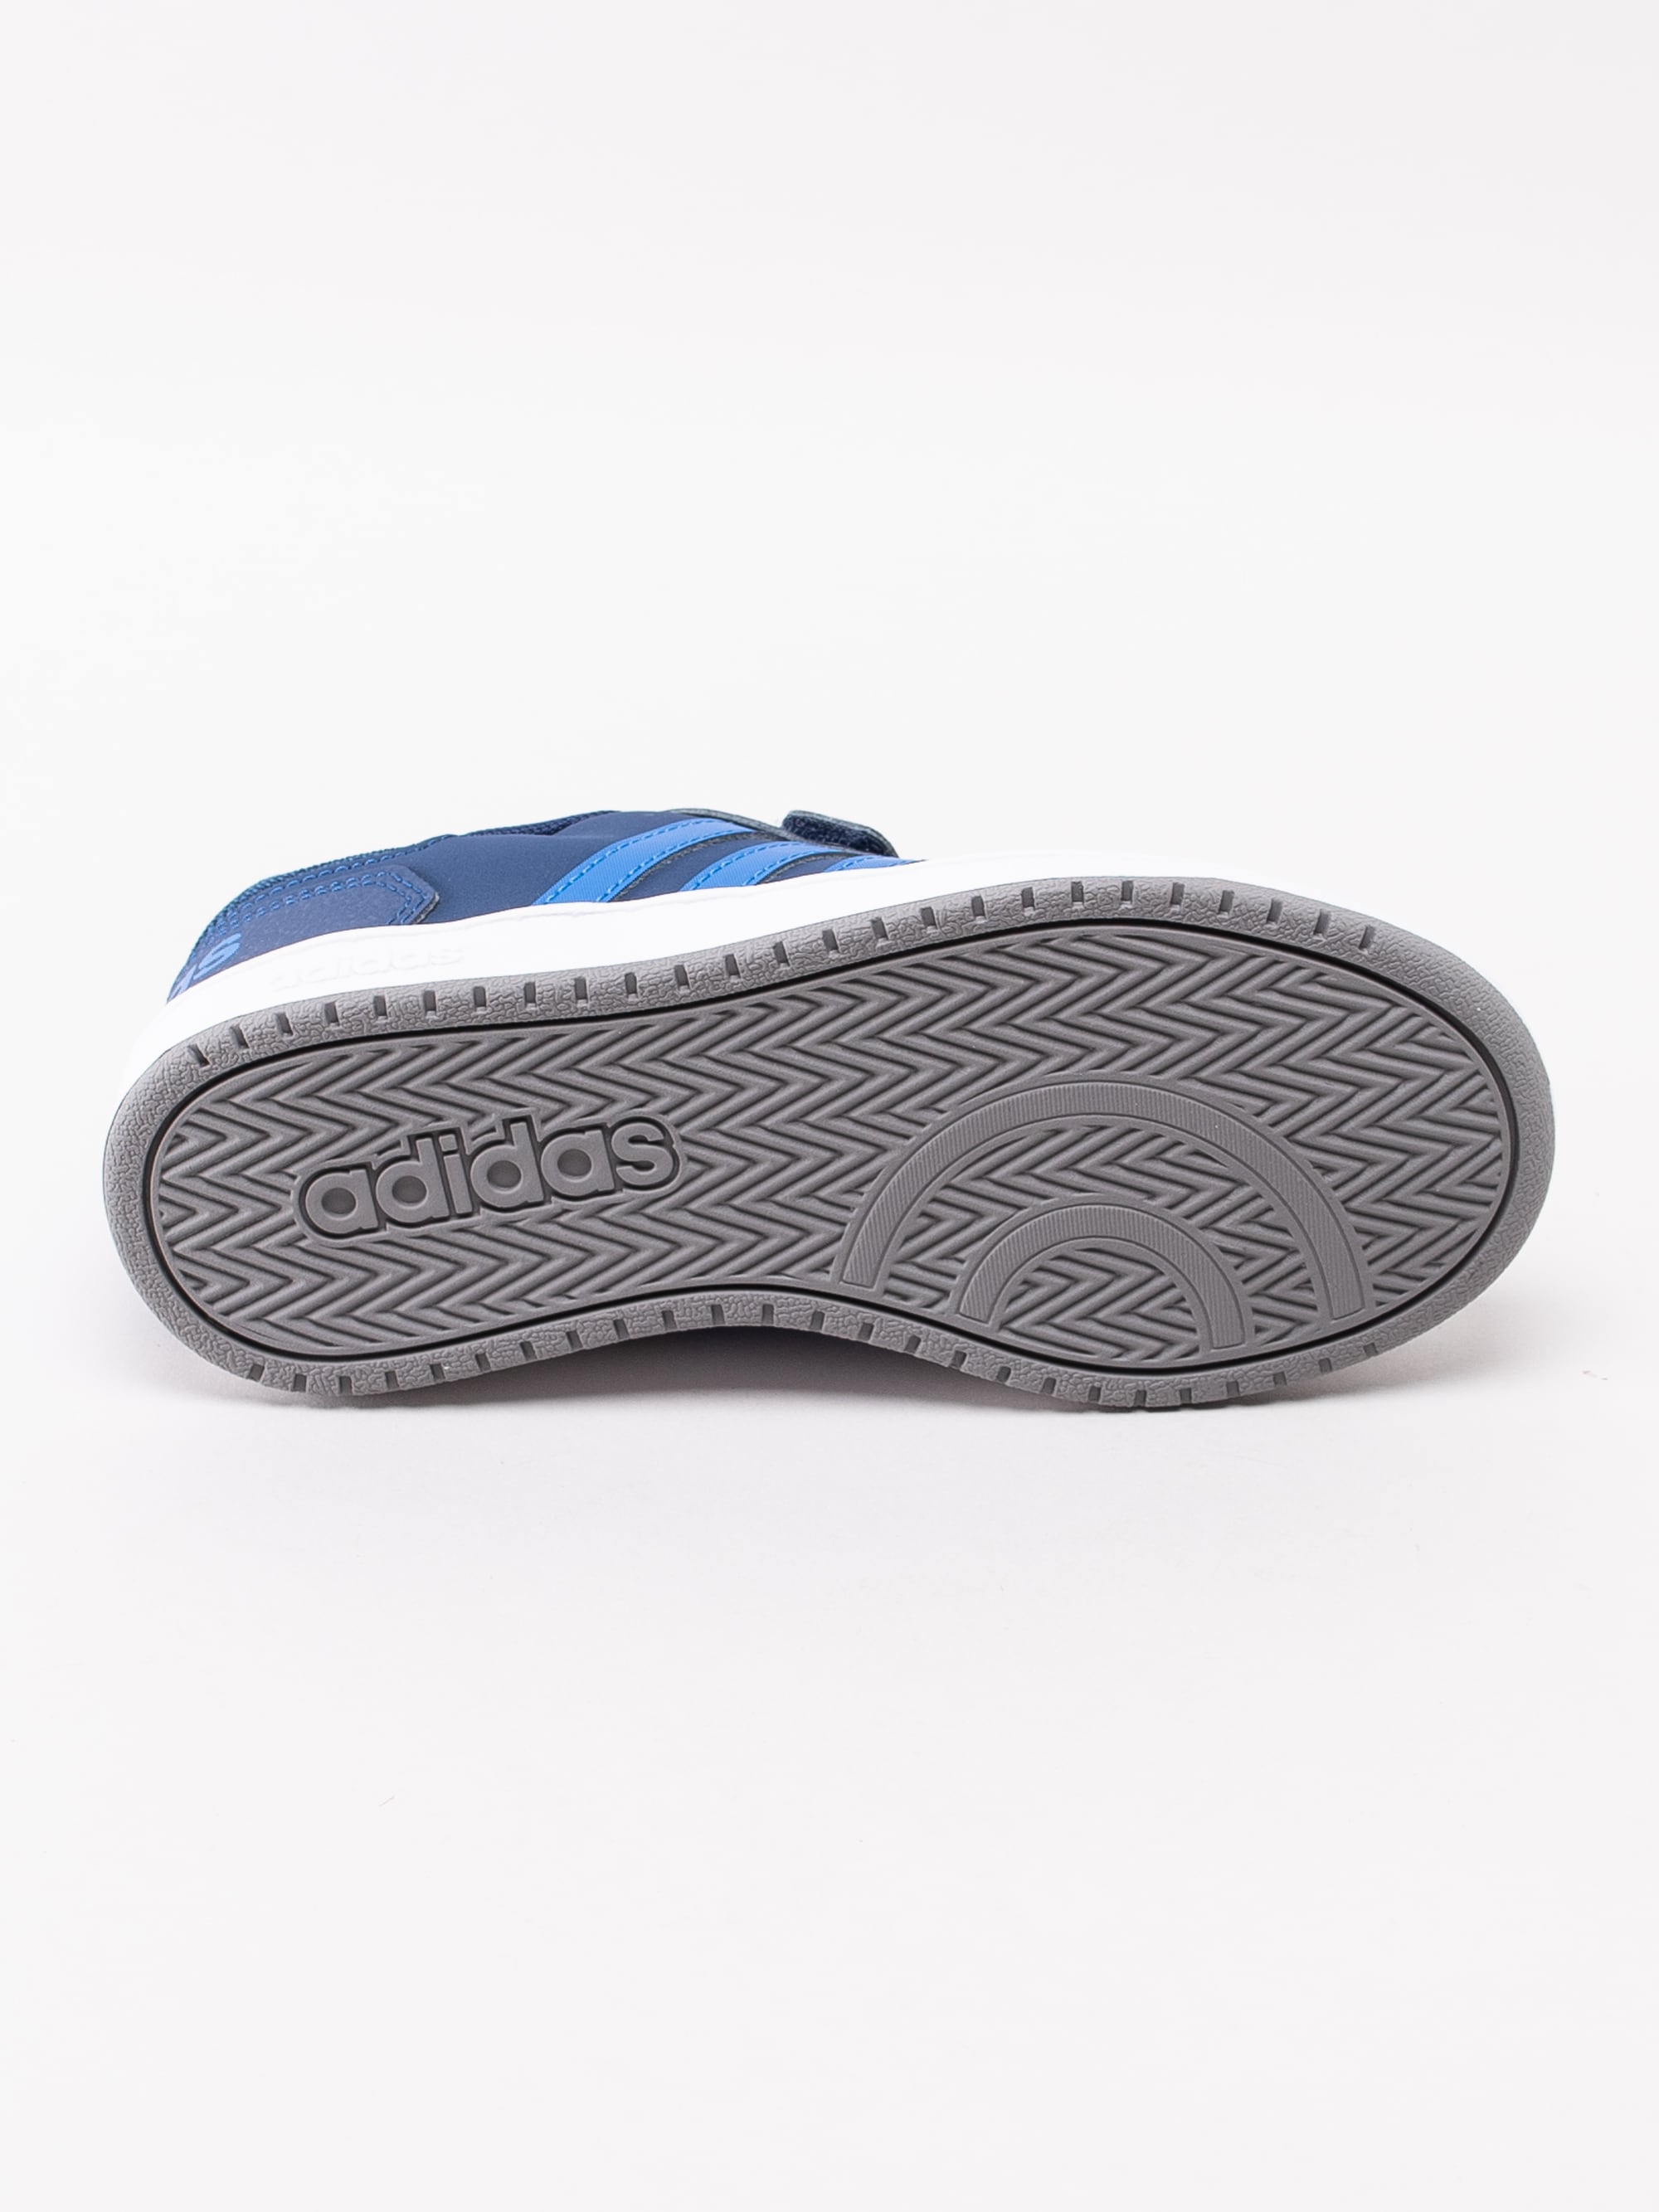 56193011 Adidas Hoops 2.0 Cmf C EE9000 mörkblå sneakers med kardborre-5